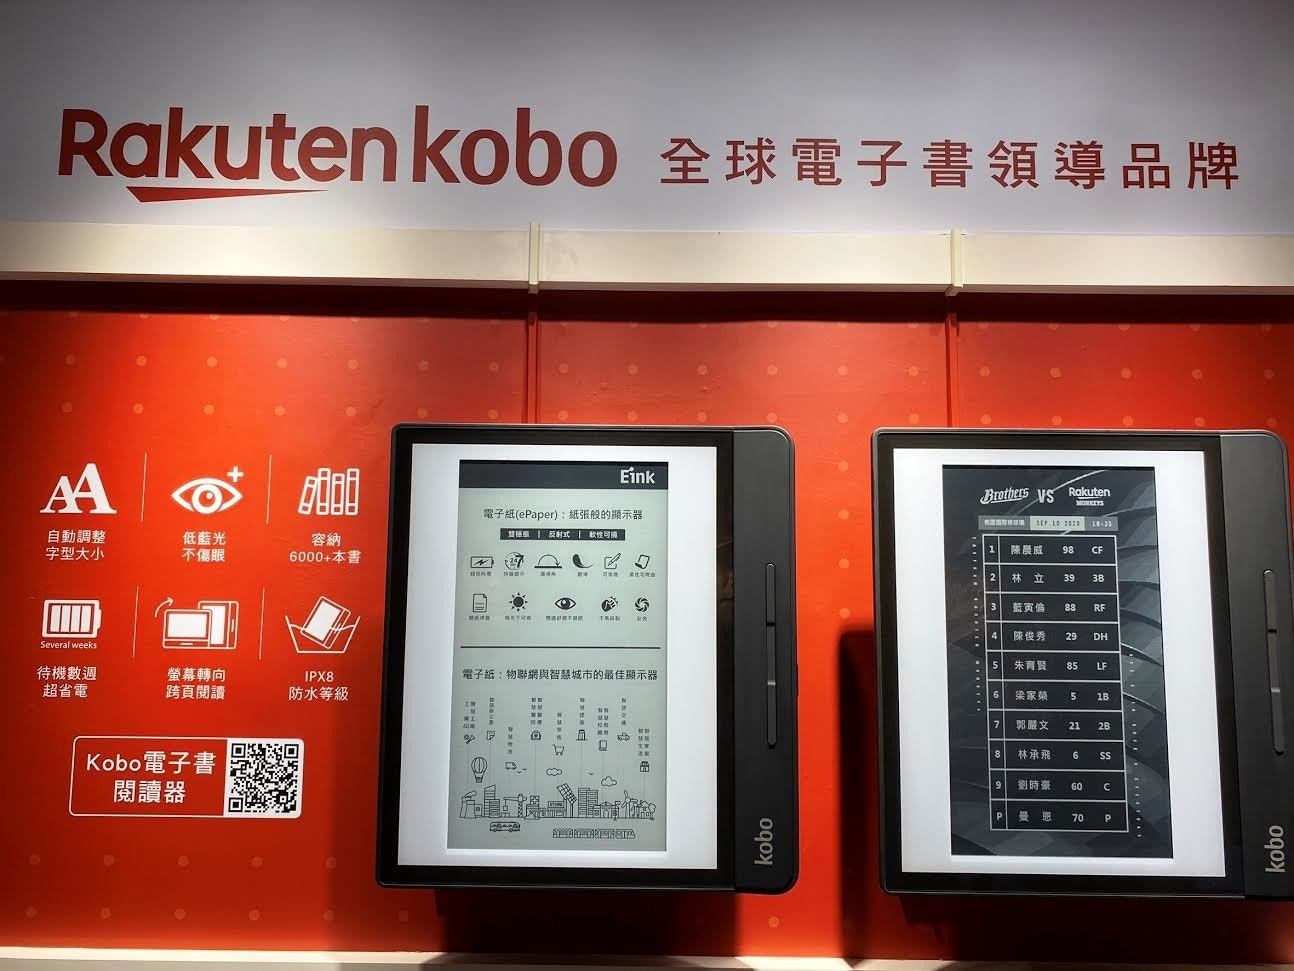 照片中提到了Rakuten kobo 全球電子書領導品牌、AA、Eink，跟樂天有關，包含了今麥郎、顯示裝置、電子產品、電話技術、多媒體